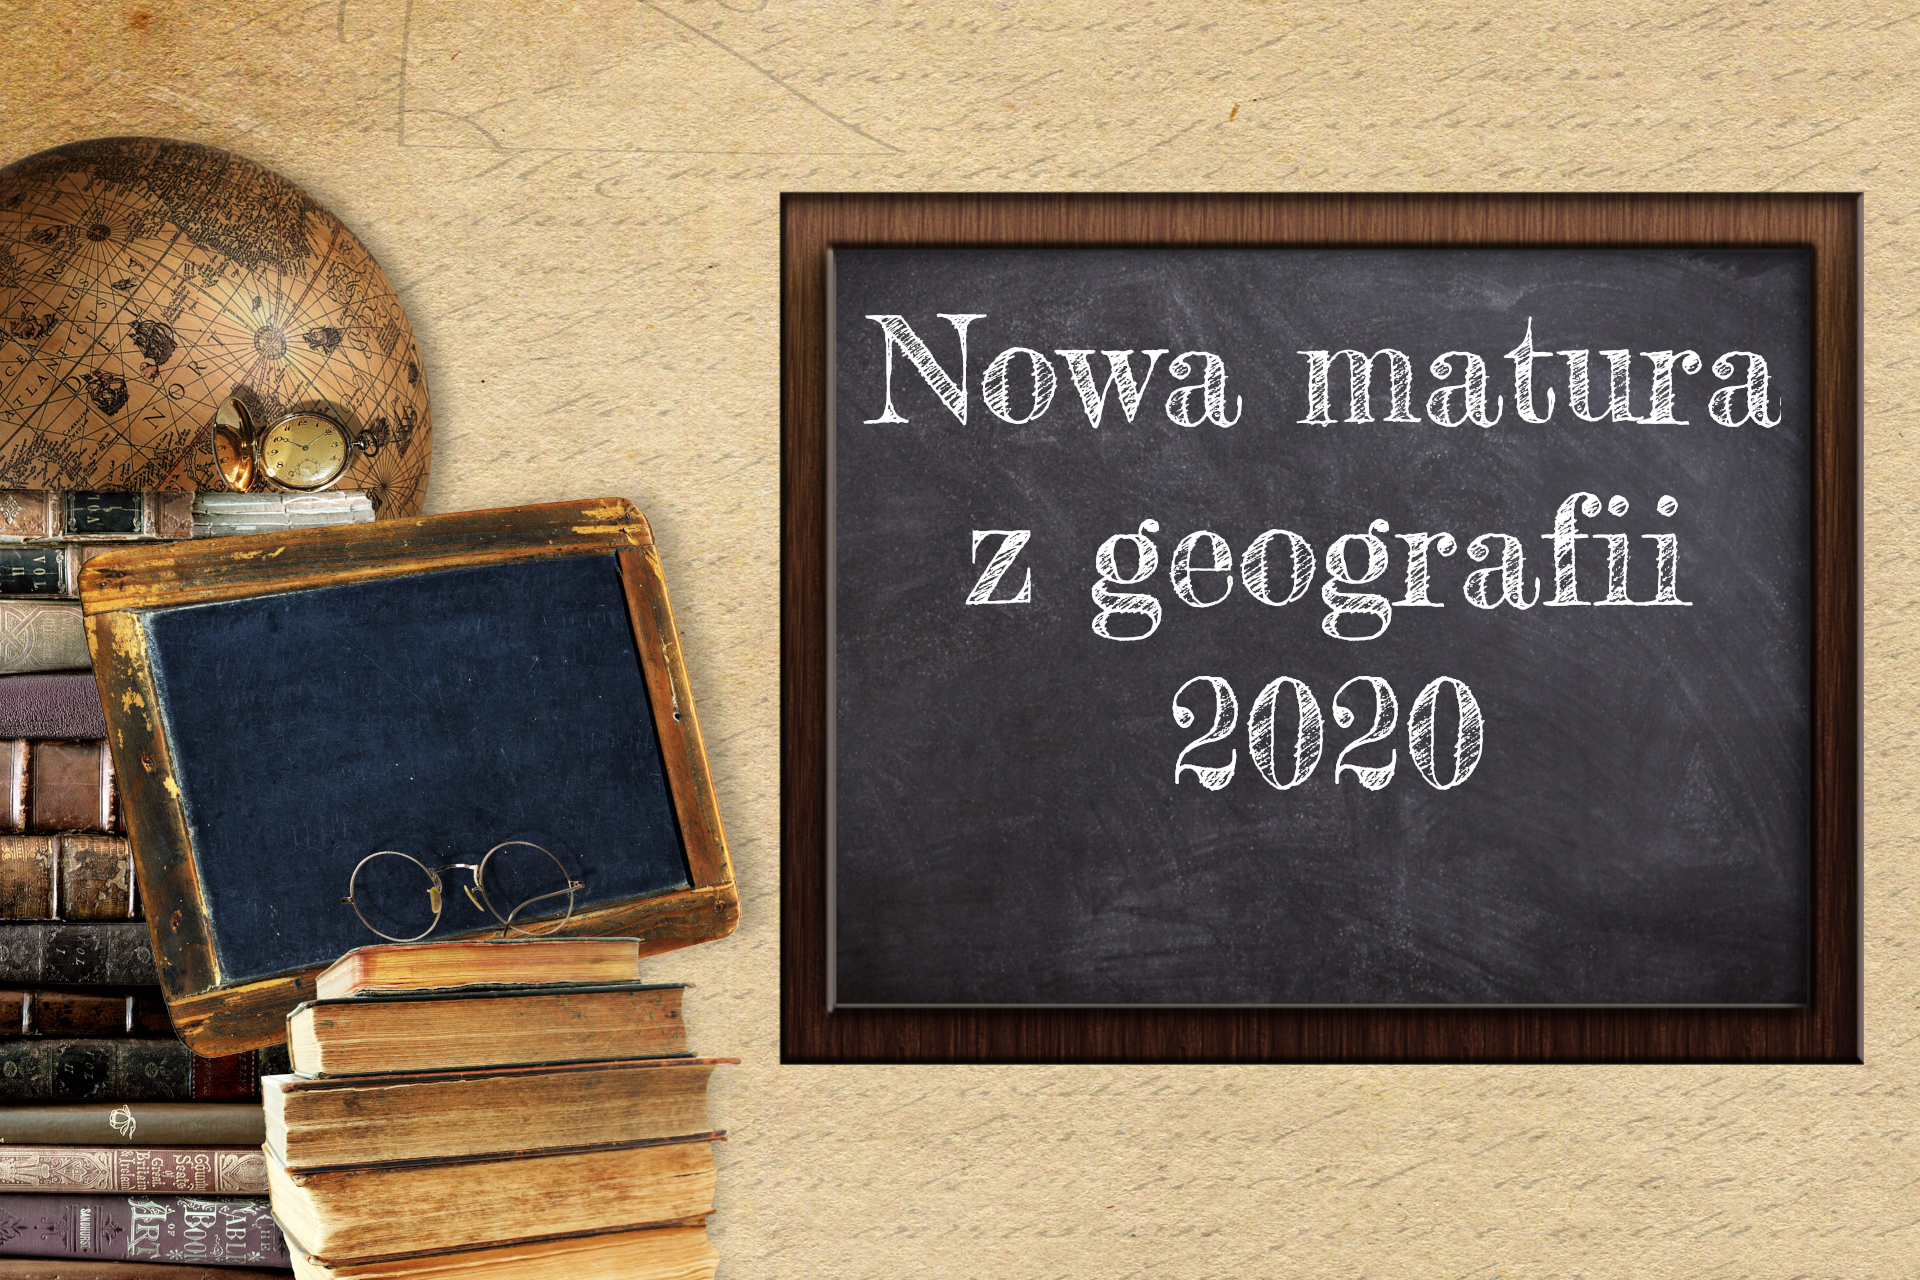 Nowa matura z geografii 2020